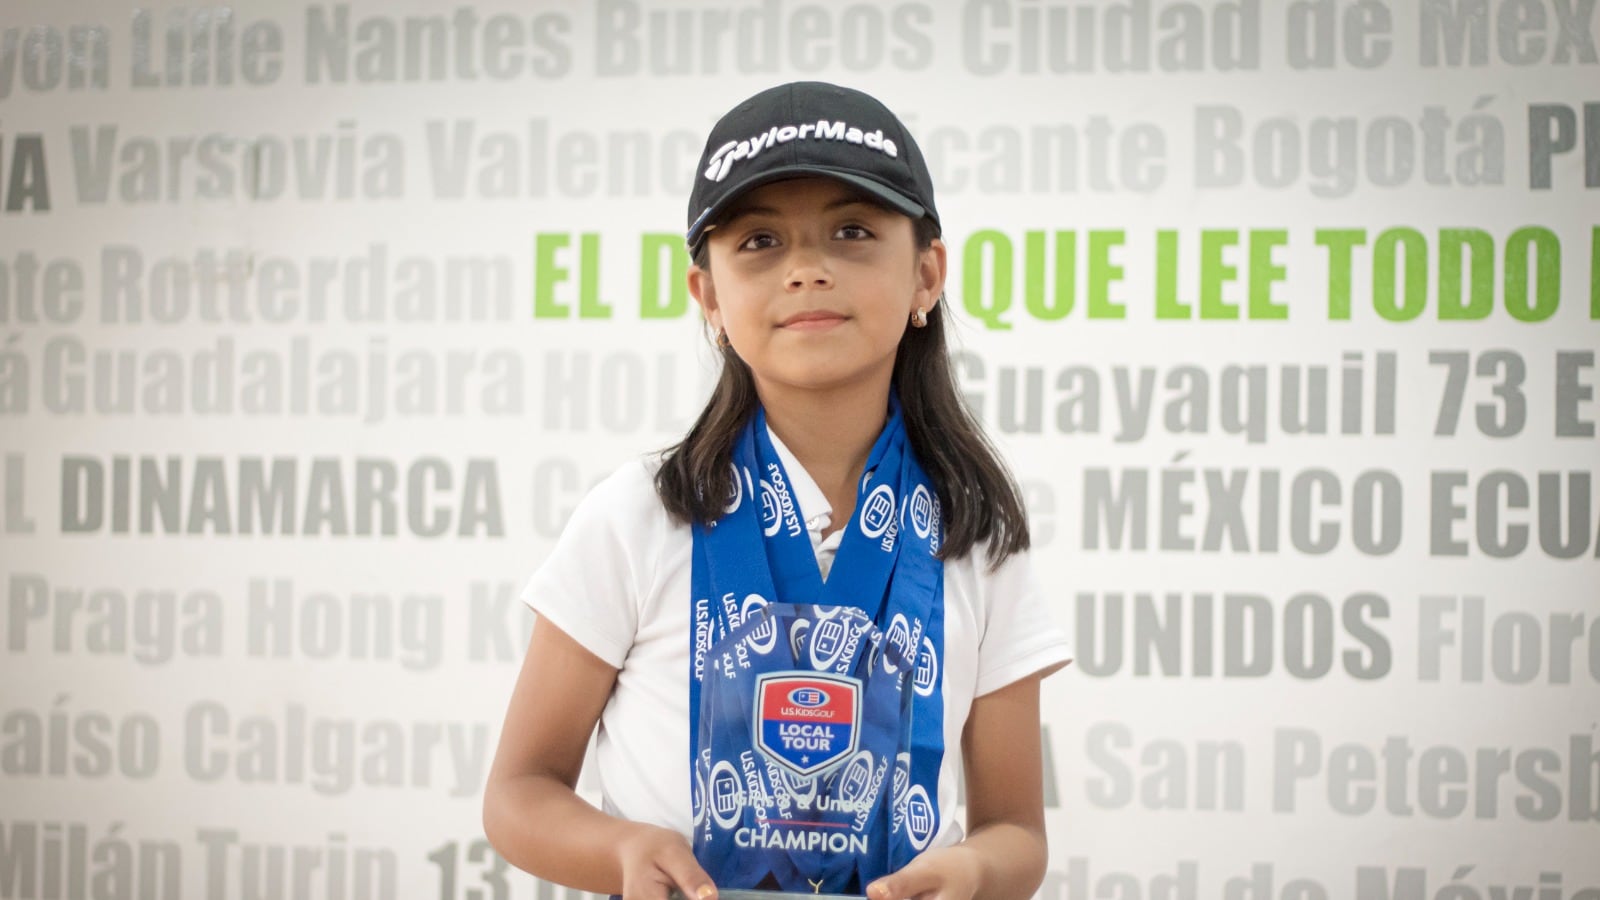 Isabella Coral Ochoa en los estudios de Metro Ecuador